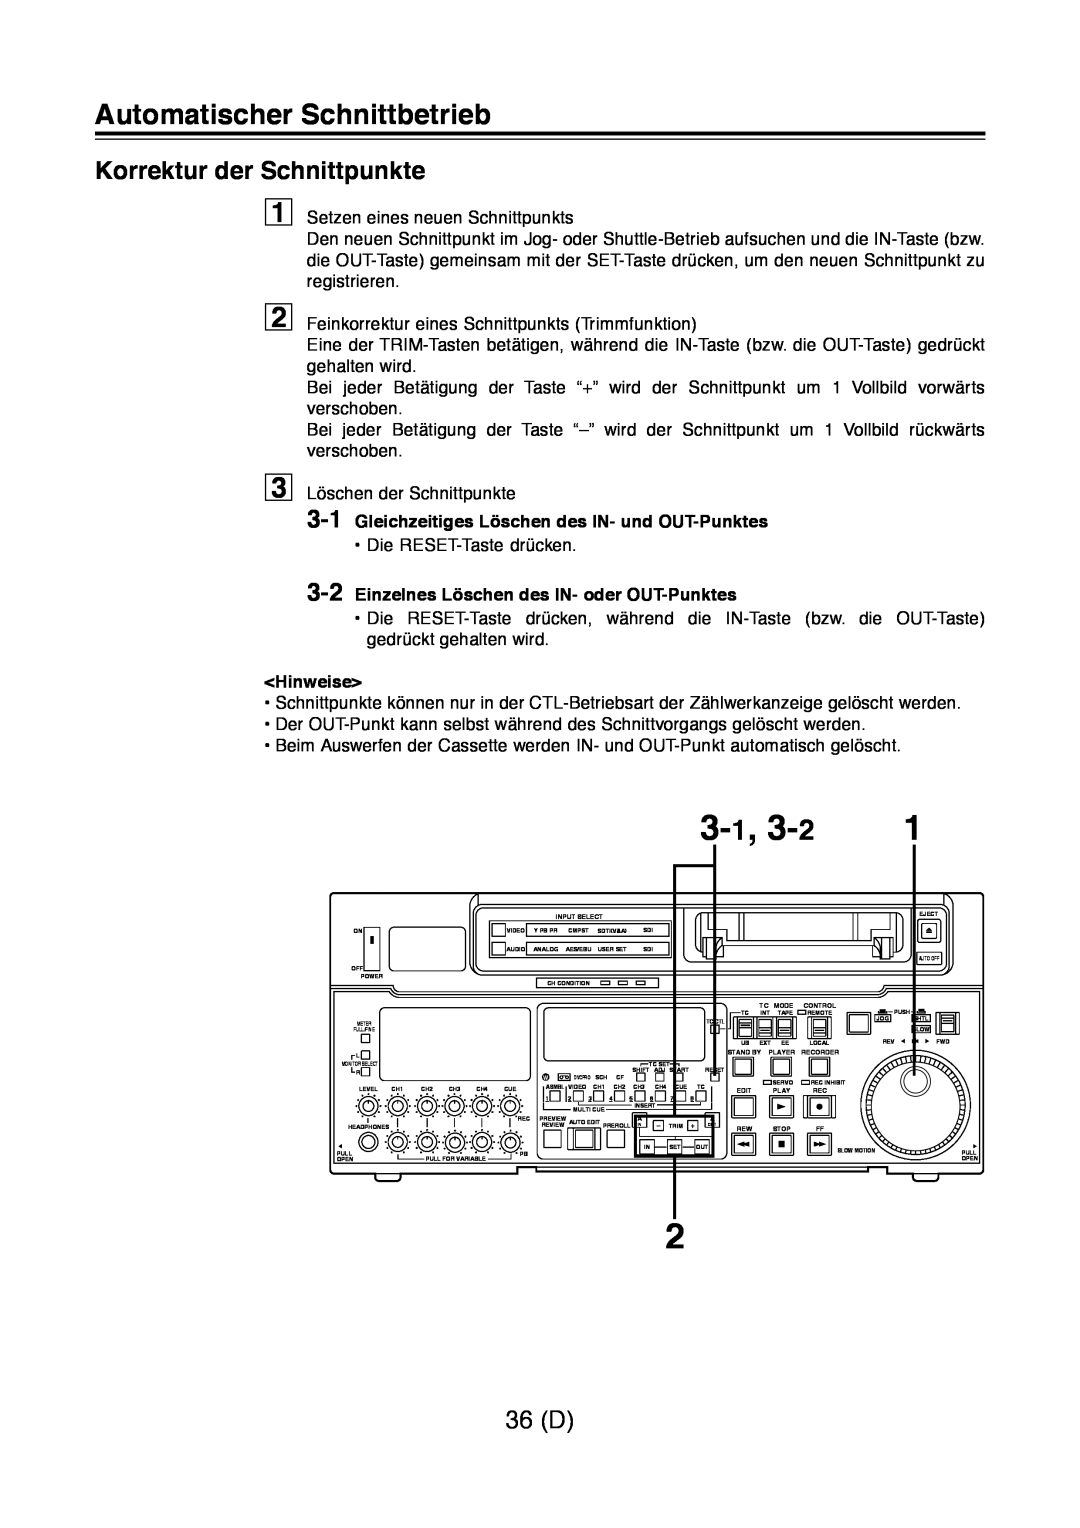 Panasonic AJ-D960 3-1, 3-2, Korrektur der Schnittpunkte, 36 D, Gleichzeitiges Löschen des IN- und OUT-Punktes, Hinweise 